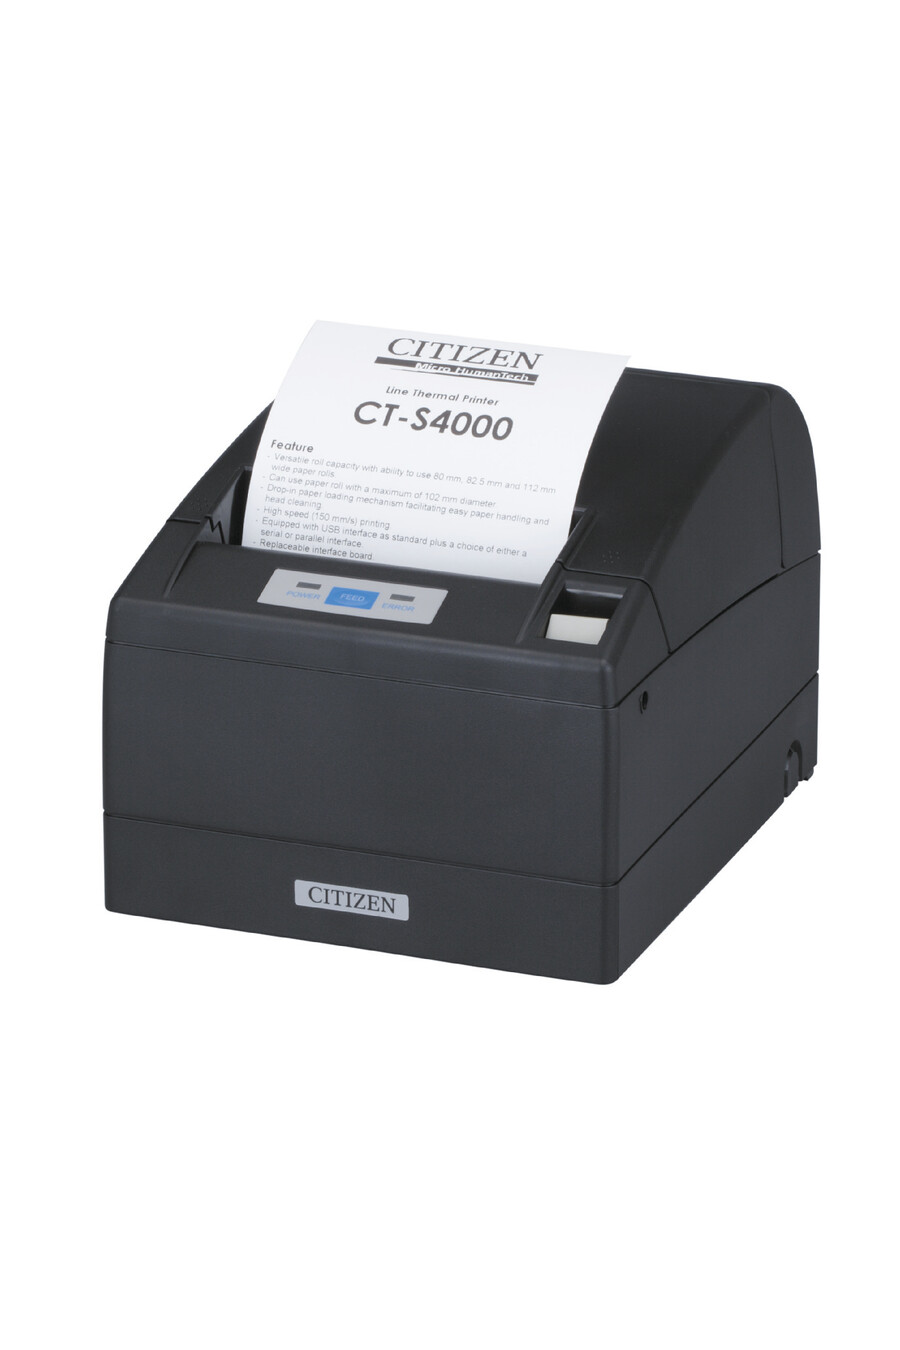 citizen-ct-s4000-receipt-printer